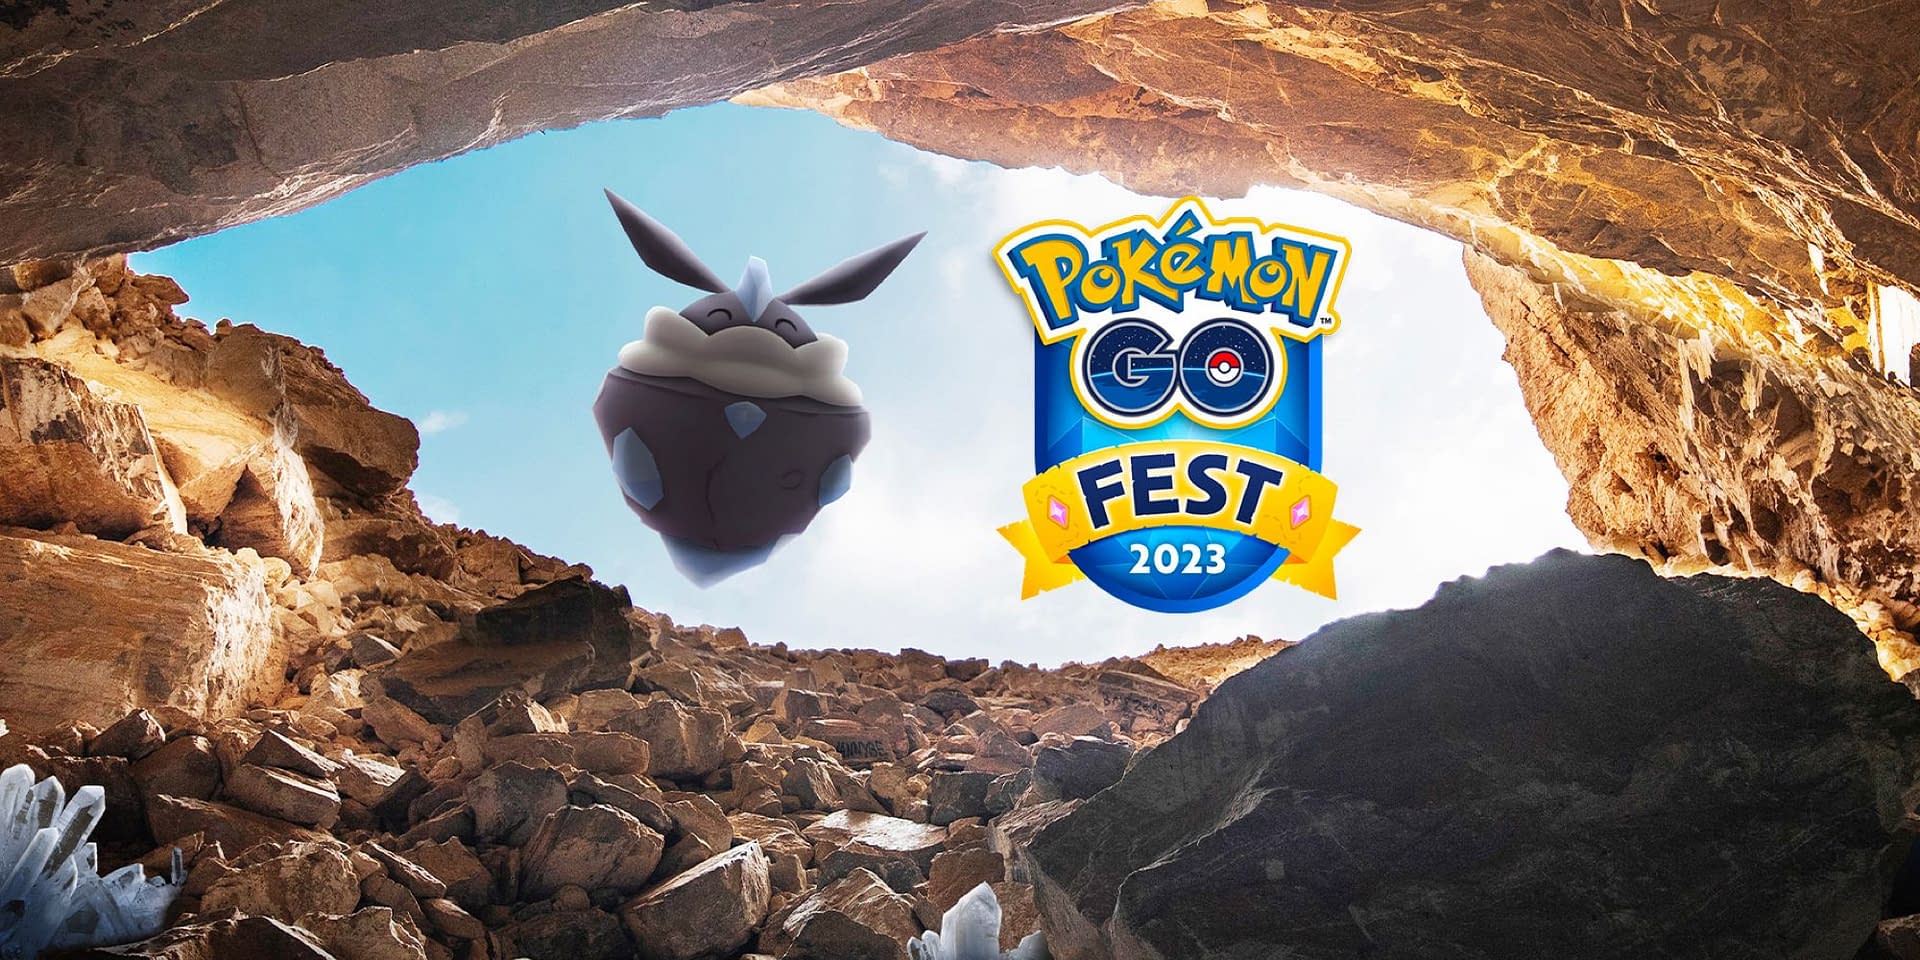 Pokémon GO Fest 2023: global